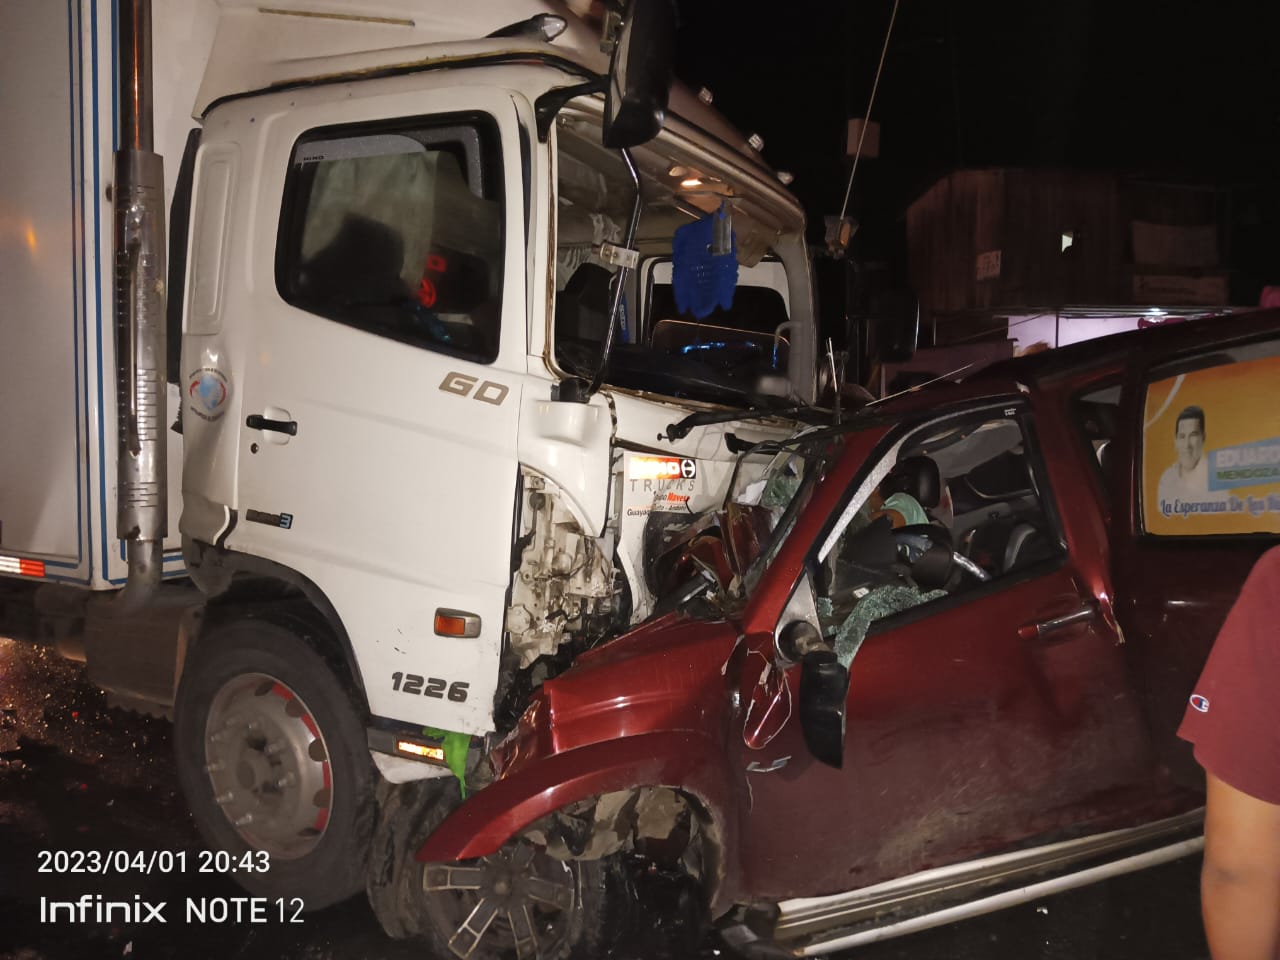 Una tragedia viven cuatro familias del cantón Buena Fe, provincia de Los Ríos. Tres chicos murieron atrapados dentro de una camioneta.